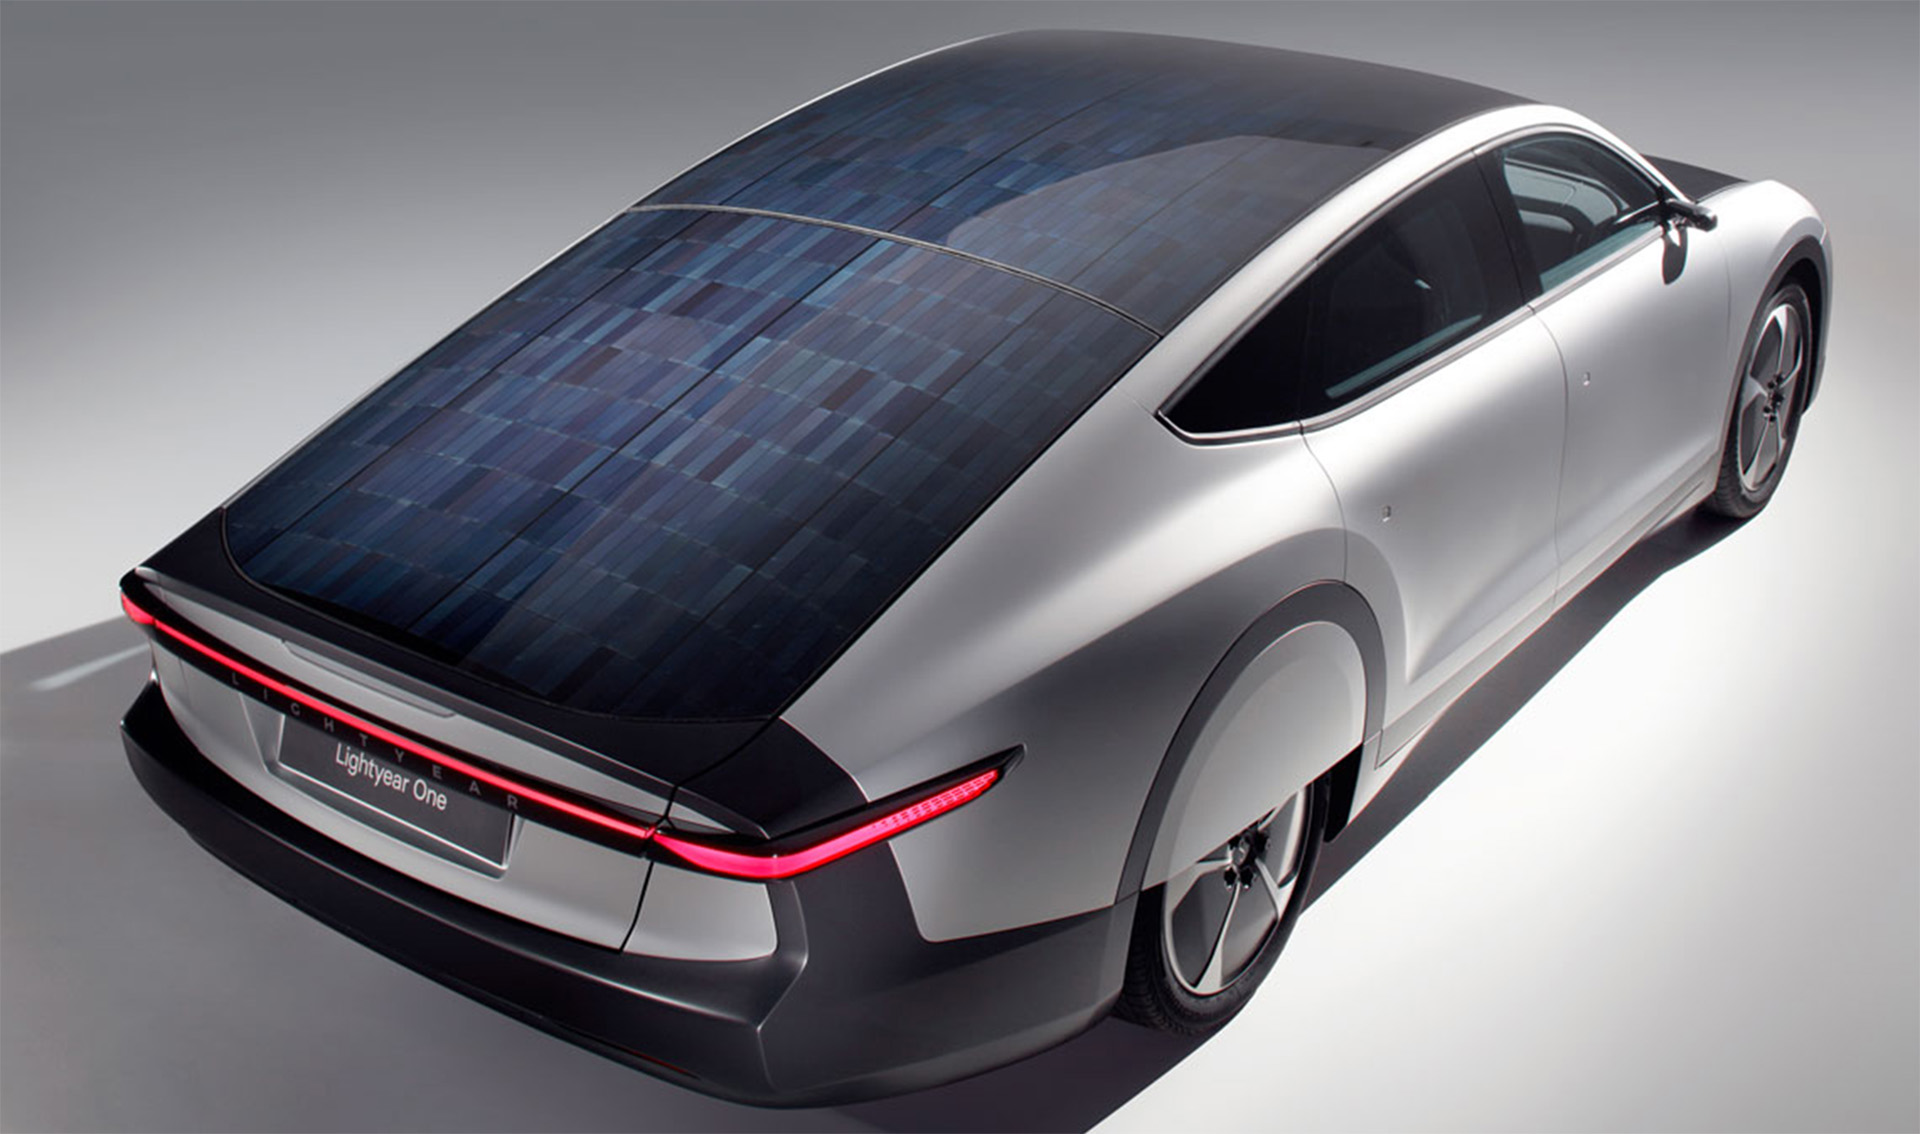 La forma y las celdas de energía fotovoltaica, los dos aspectos exteriores salientes del Lightyear 0, pero debajo de la carrocería hay otras innovaciones